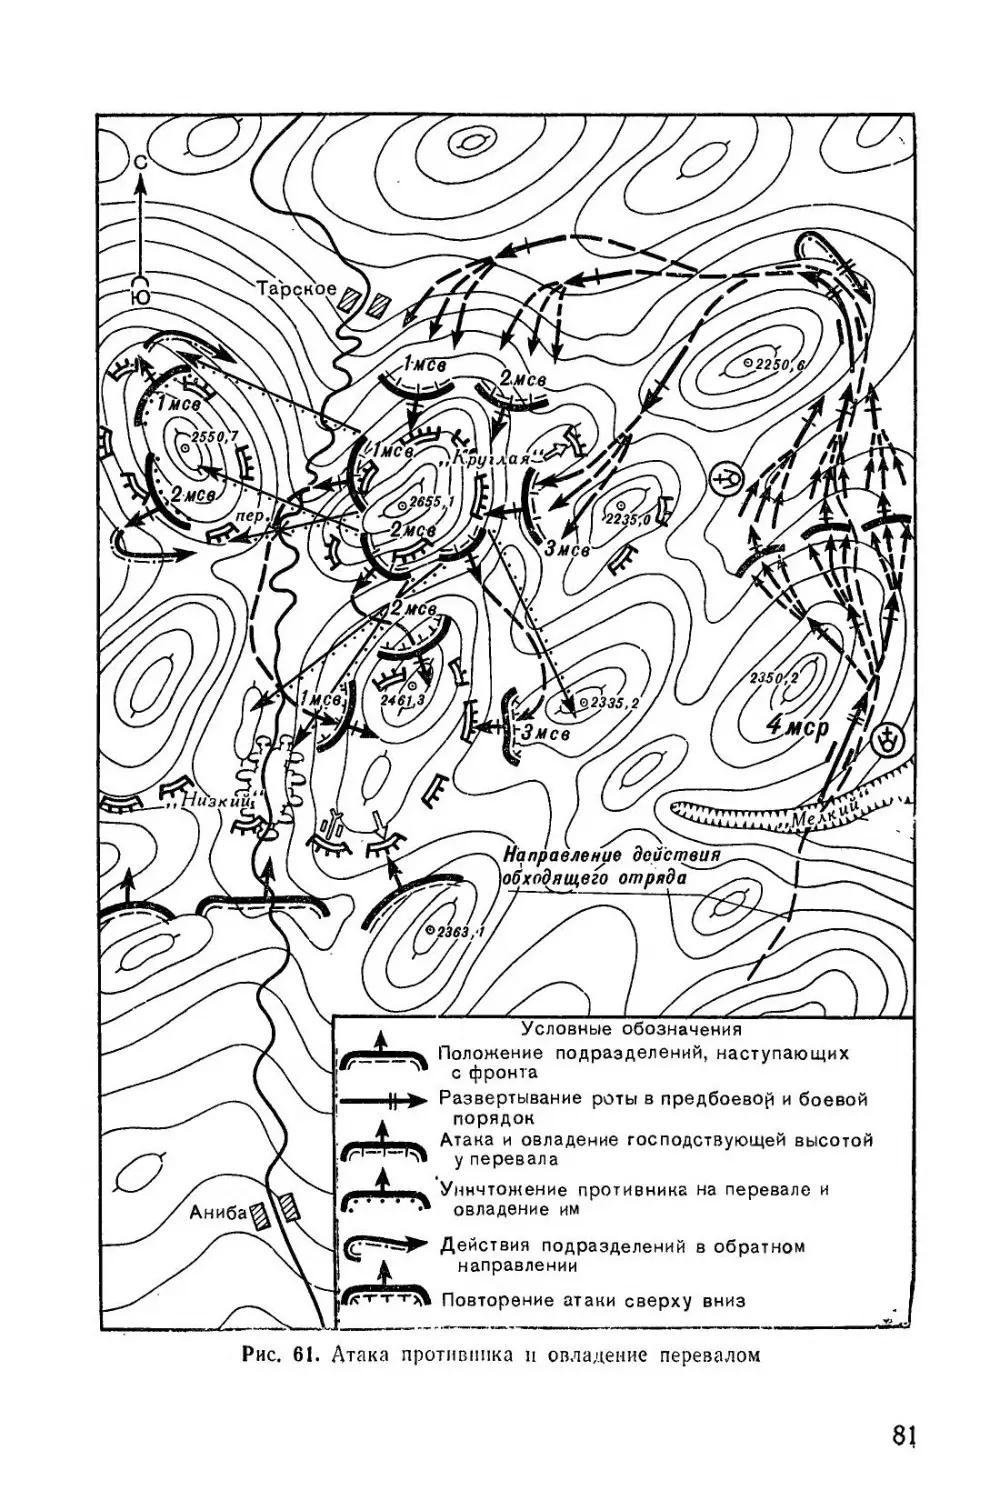 Методическое пособие Обучение мотострелковых подразделений боевым действиям в горах (1979)_82